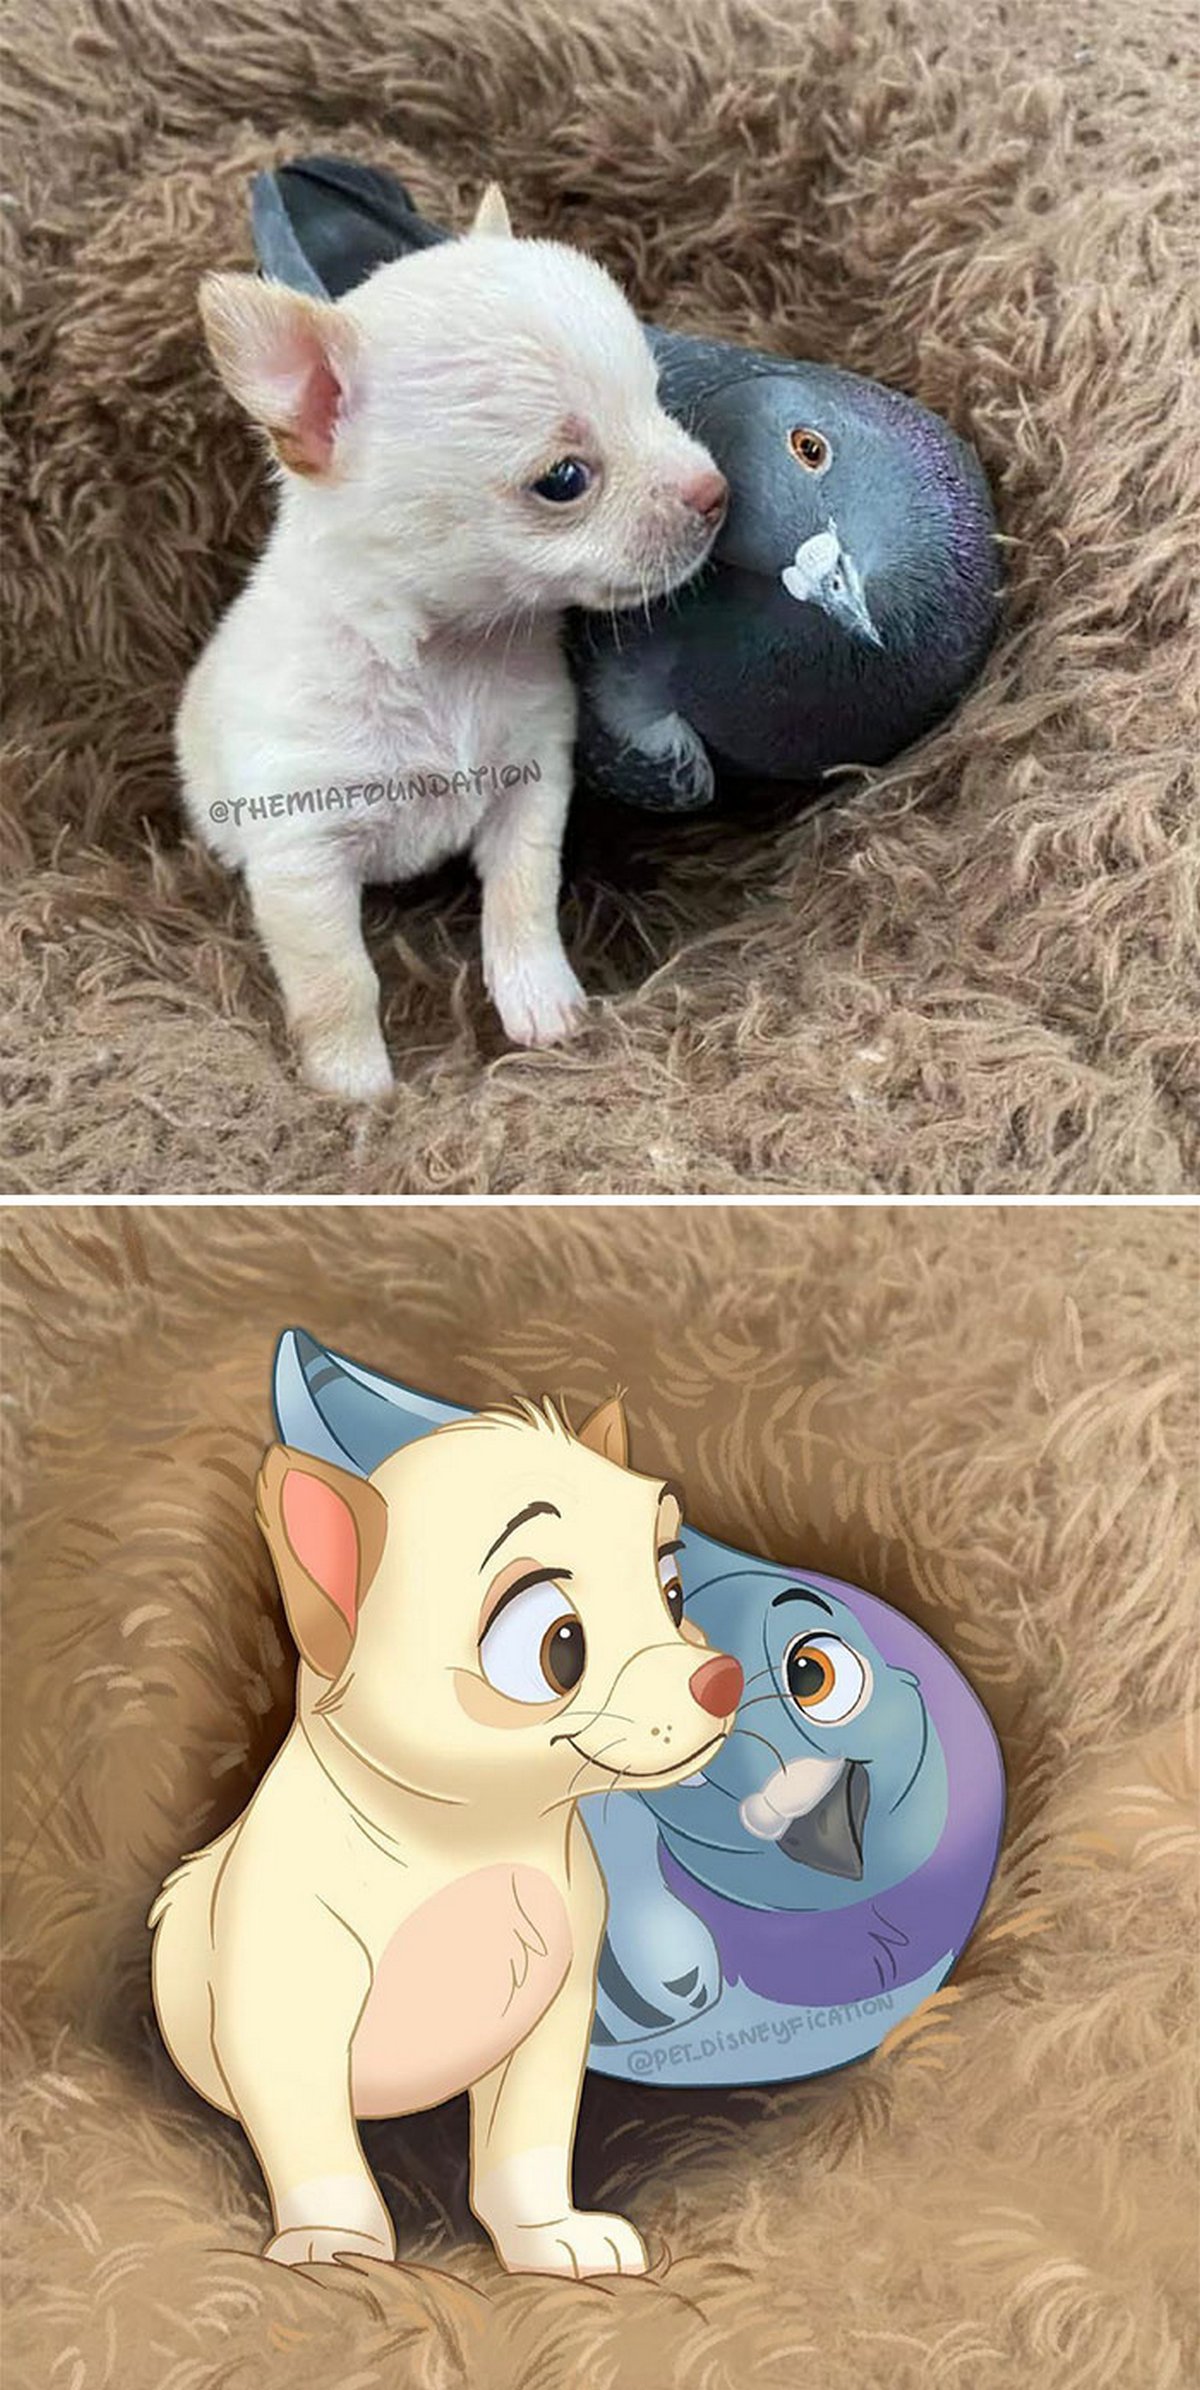 Les gens envoient des photos de leurs animaux à cette artiste et elle les transforme en personnages Disney